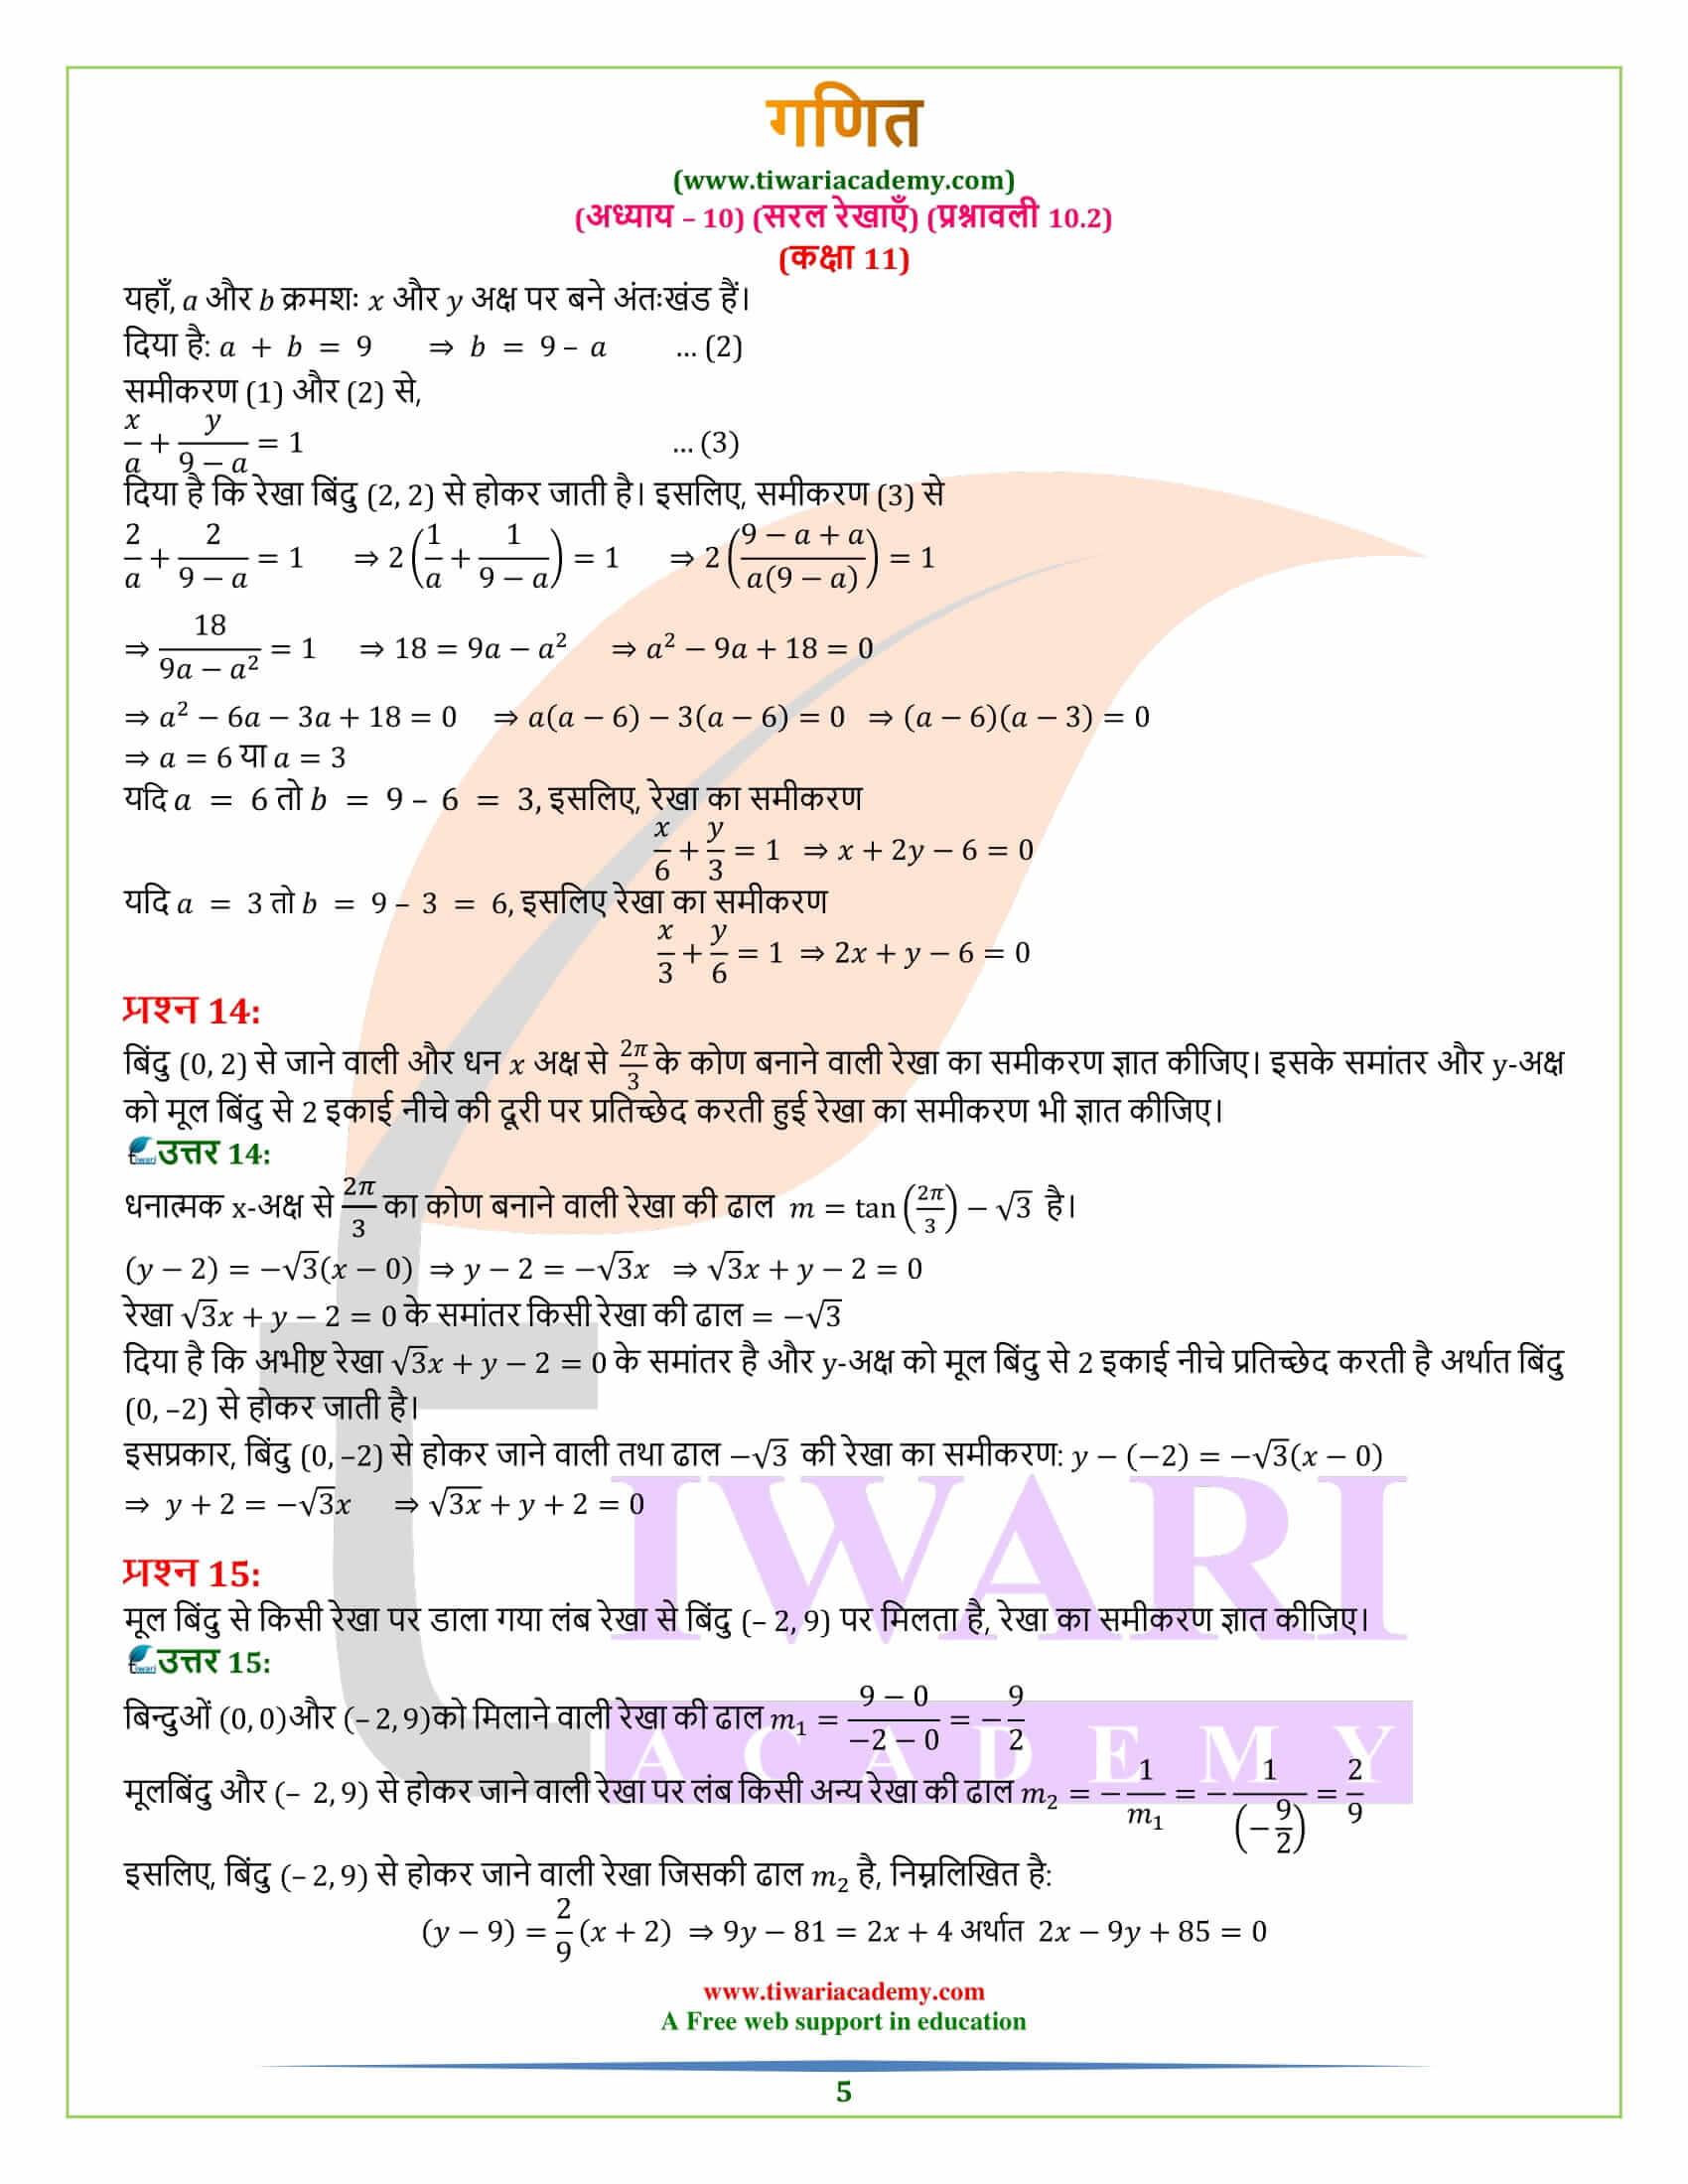 एनसीईआरटी समाधान कक्षा 11 गणित प्रश्नावली 10.2 हिंदी मीडियम